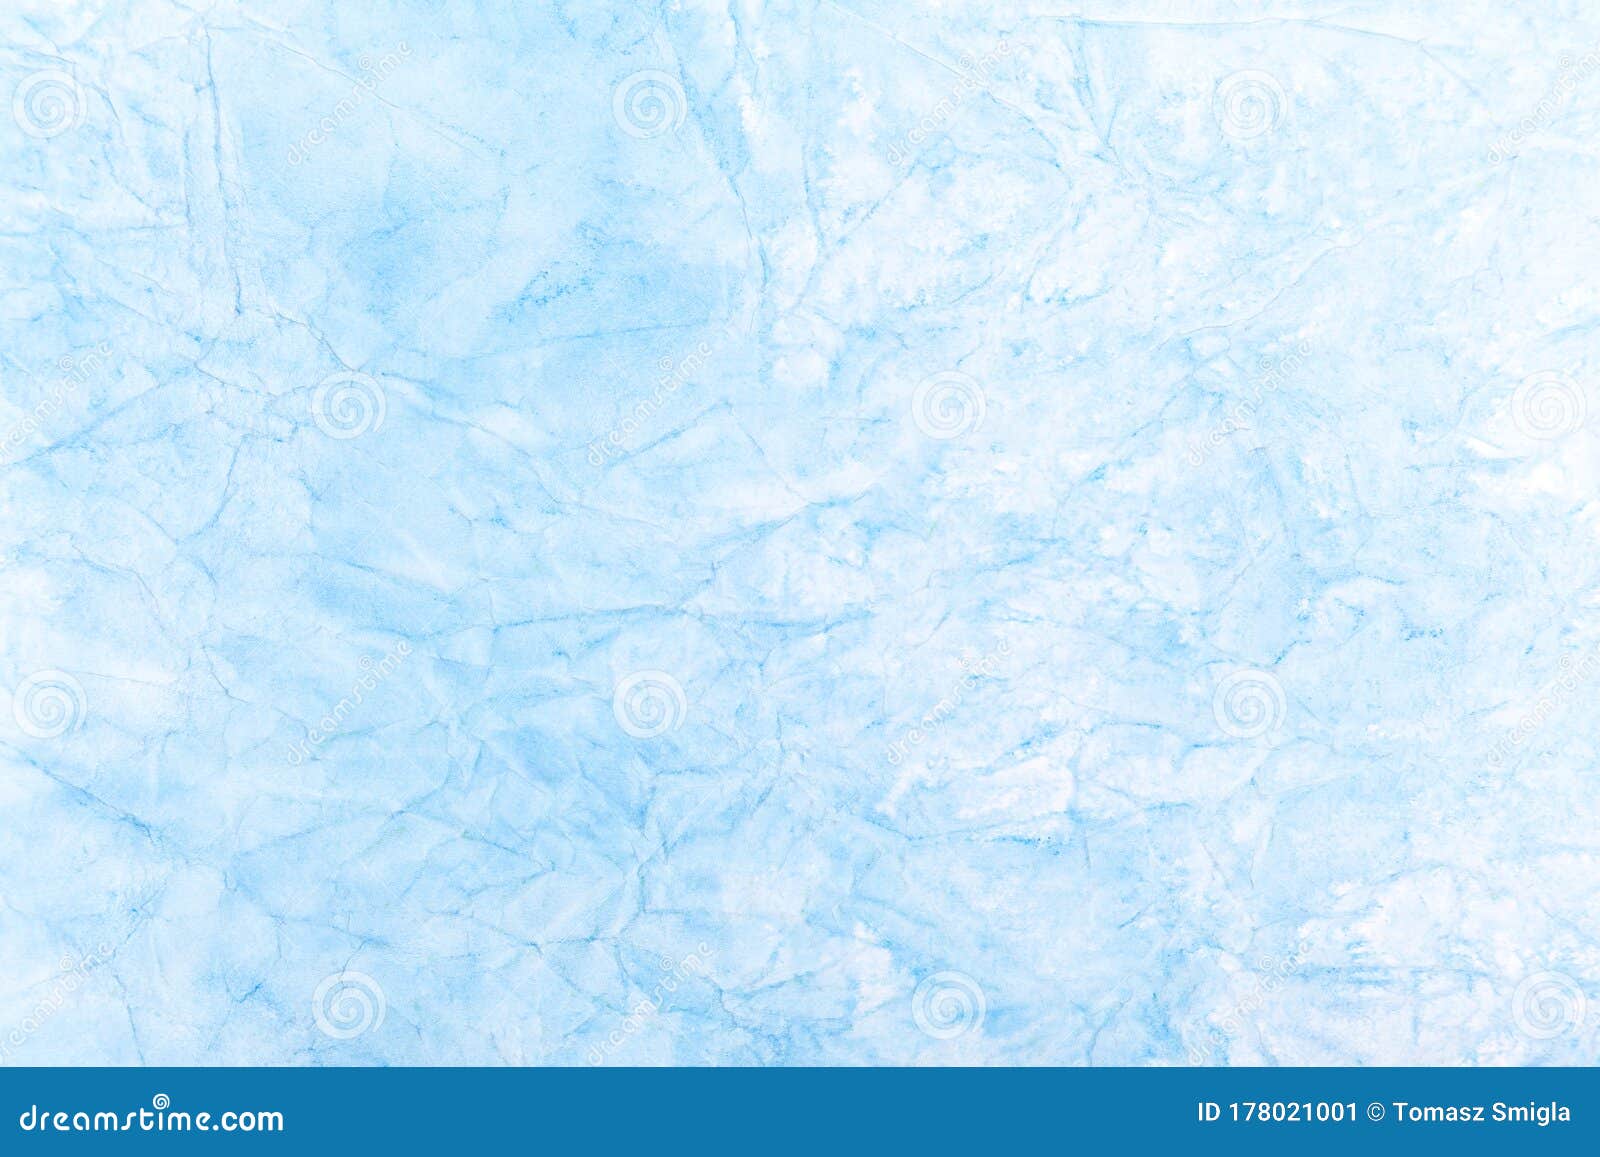 Hãy tận hưởng sự đơn giản và tinh tế của hình nền vải trừu tượng xanh nhạt, giống như đá băng xanh mát mẻ. Lớp phủ nhẹ nhàng và độc đáo này sẽ giúp làm nổi bật khu vực làm việc của bạn hoặc trang trí cho máy tính của bạn với một phong cách độc đáo.